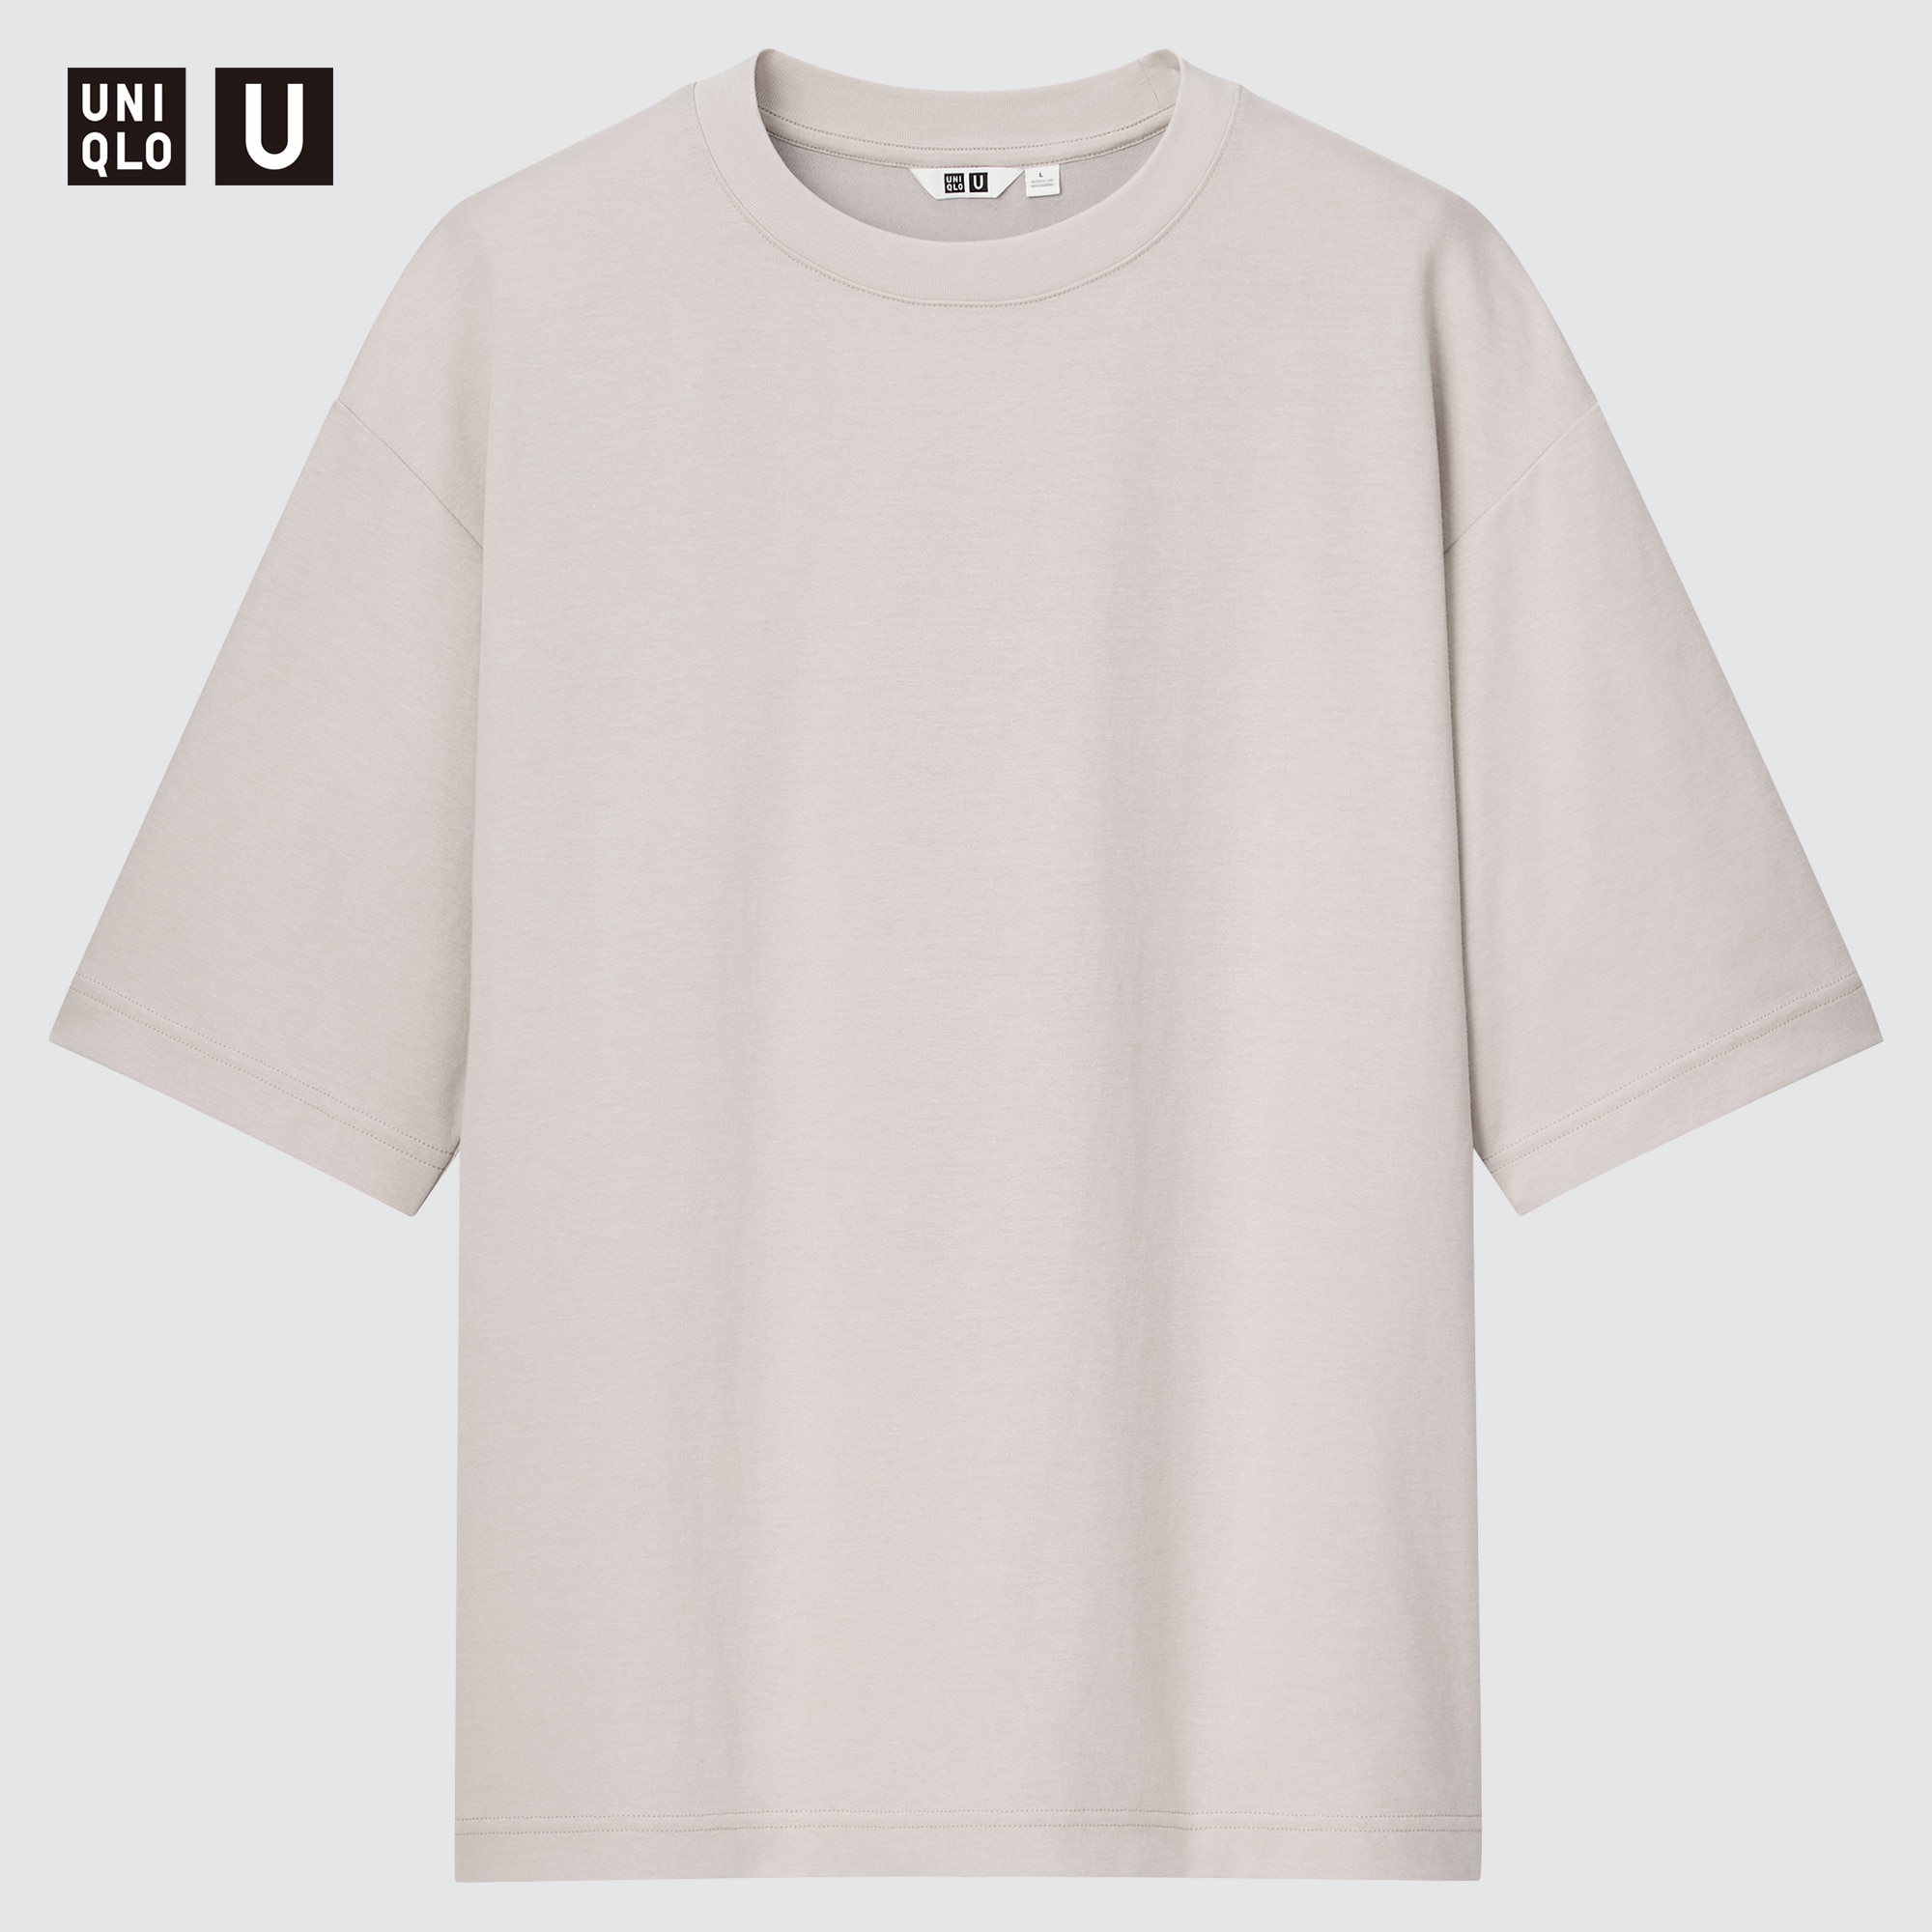 Uniqlo U AIRism Cotton Oversized Crew Neck T-Shirt | UNIQLO UK